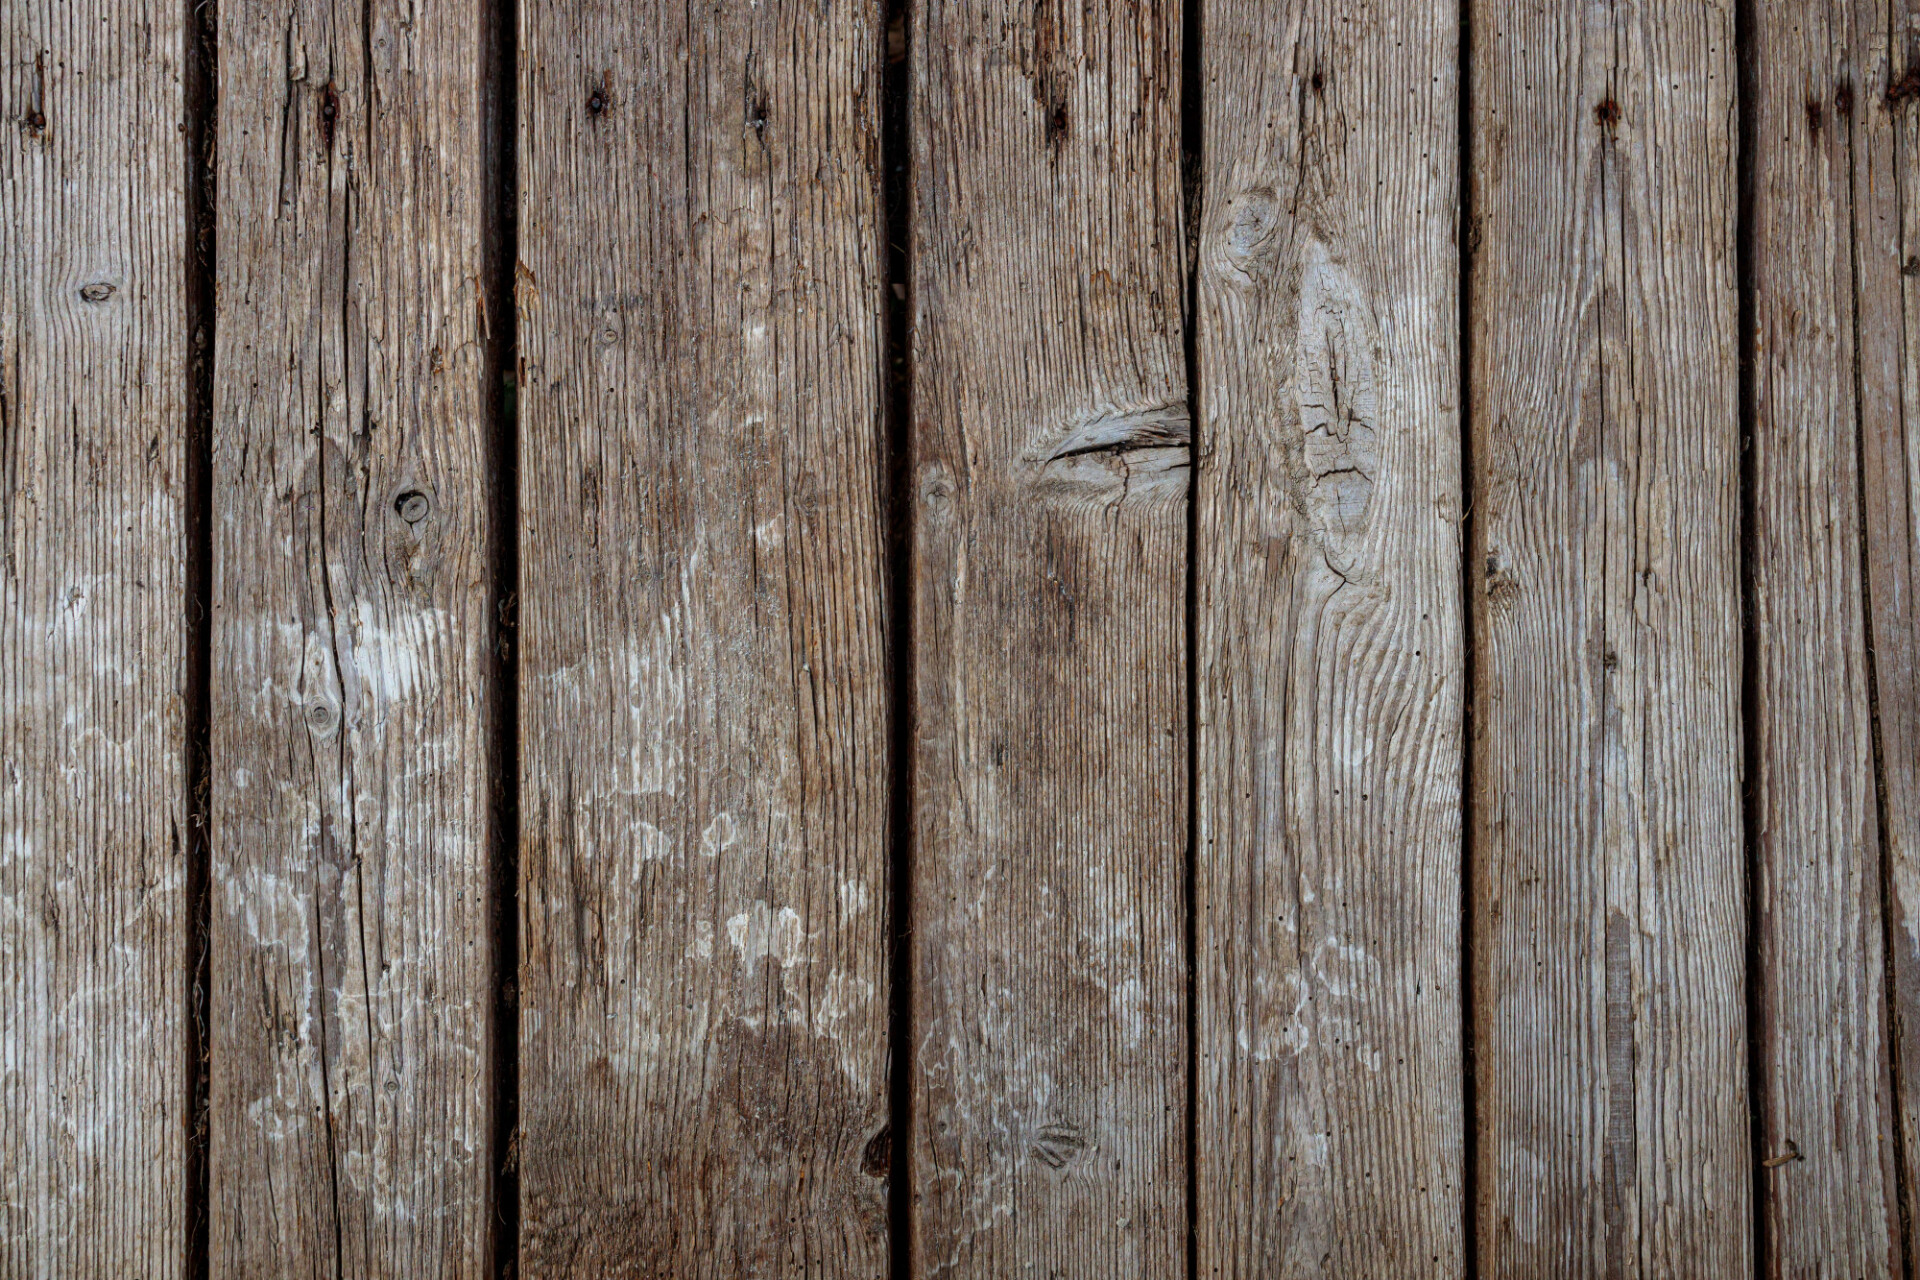 Old wooden floorboards texture